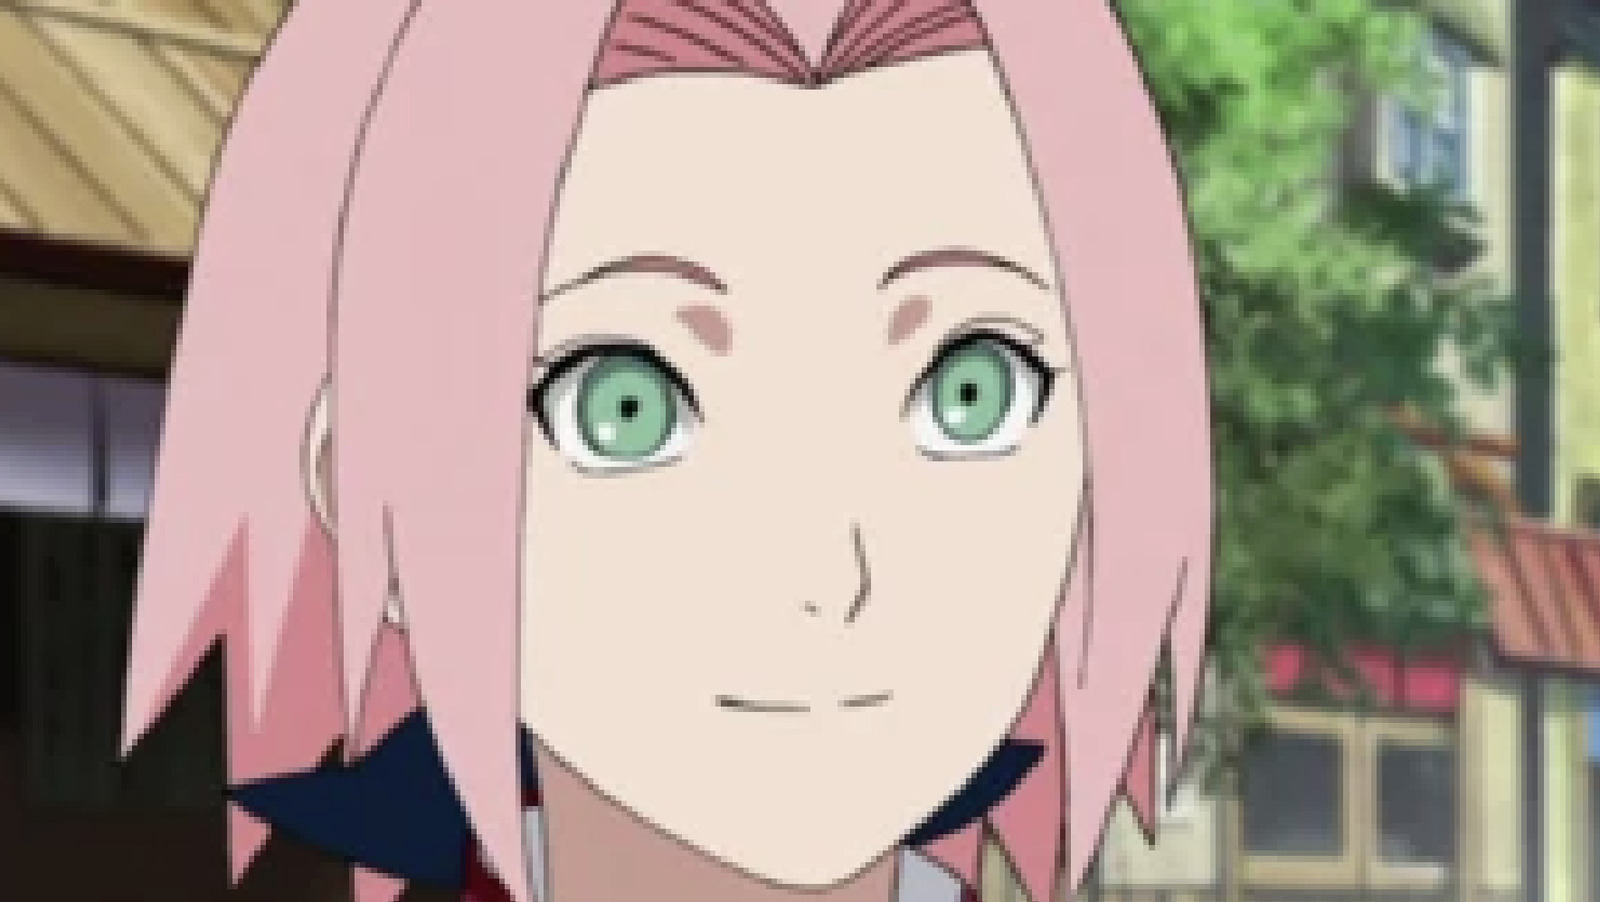 Sakura Haruno, Wiki Naruto Fans